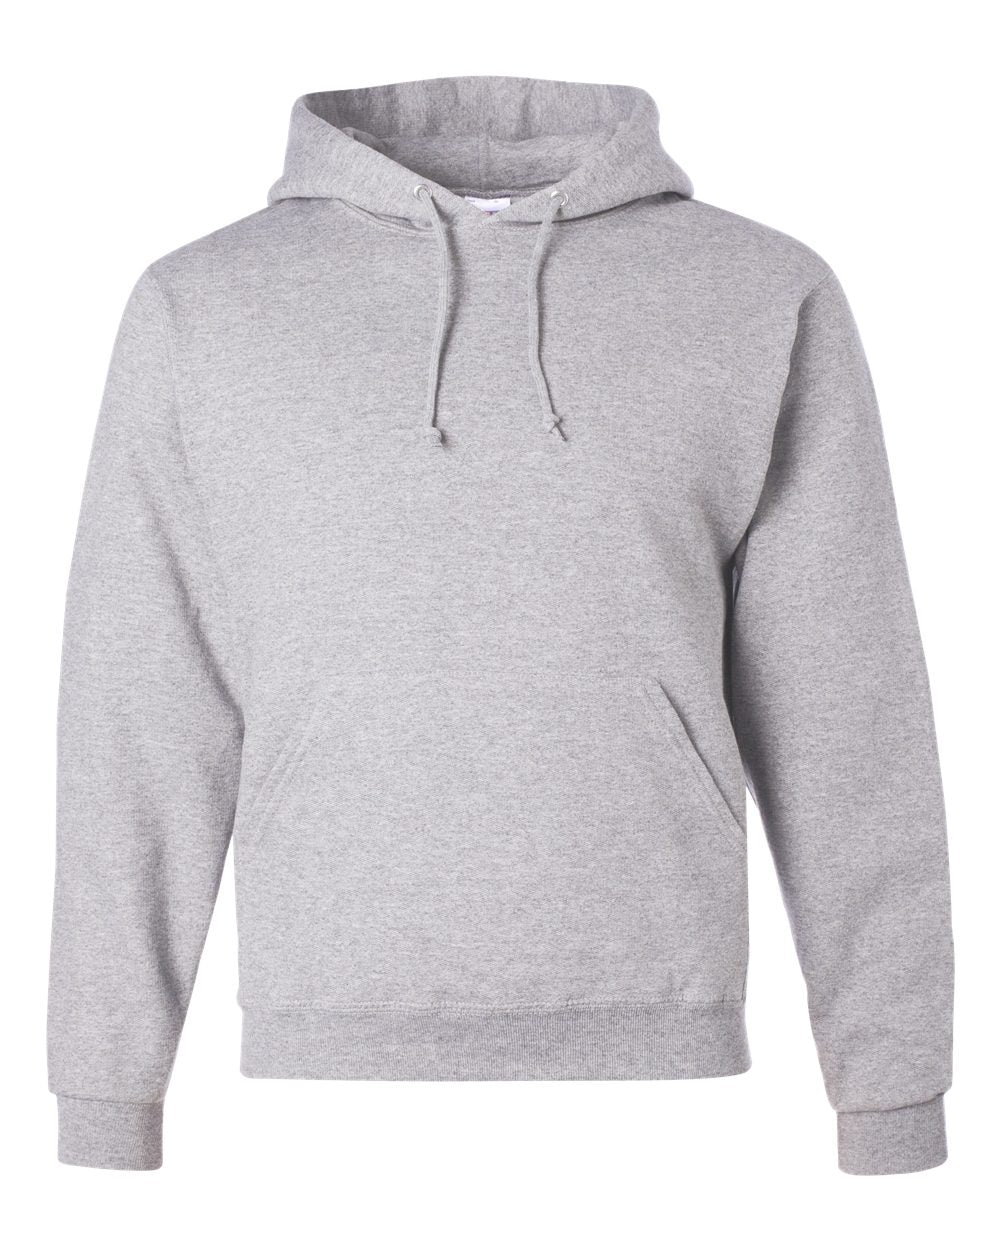 Jerzees Hooded Sweatshirt - Custom Order